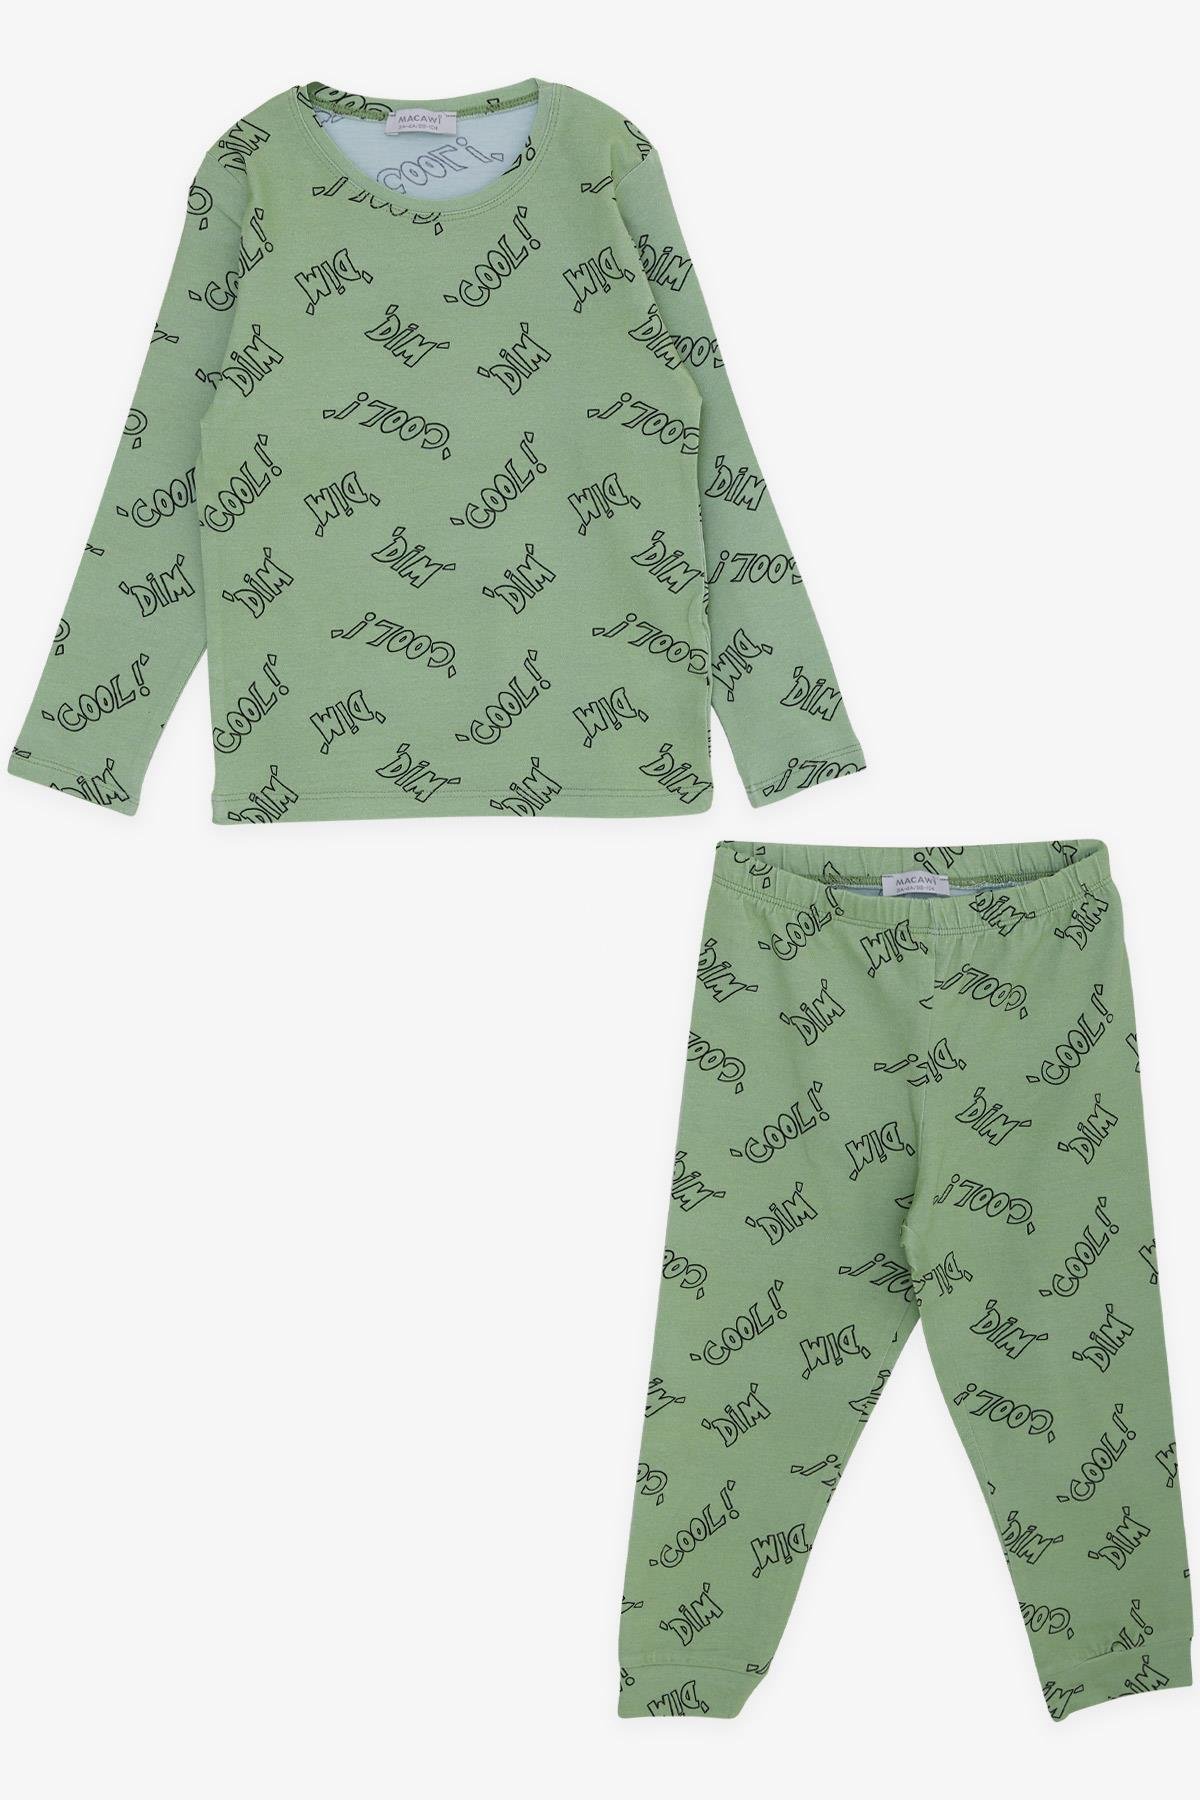 Erkek Çocuk Pijama Takımı Yazı Desenli Fıstık Yeşili 3-6 Yaş - Yumuşak  Kumaşlı Çocuk Pijamaları | Breeze